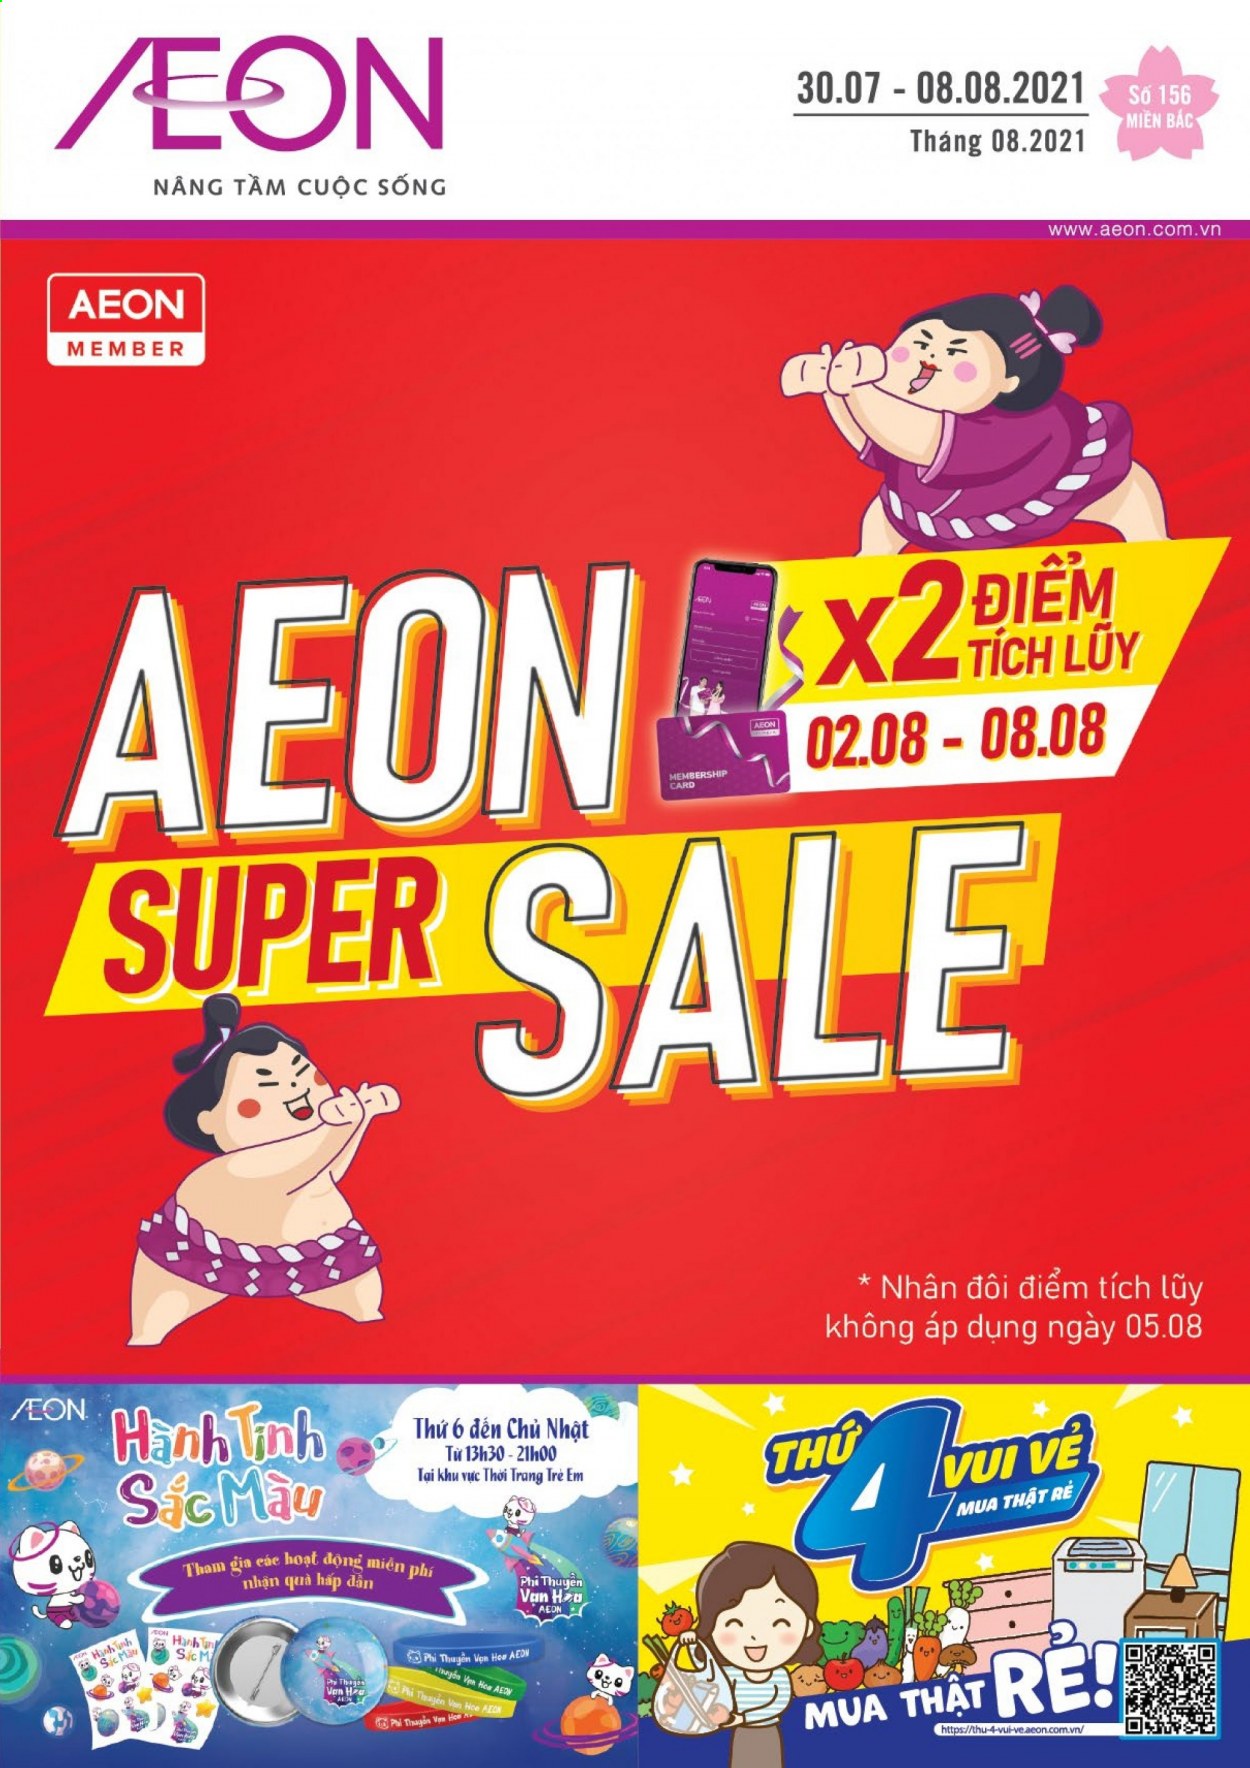 AEON offer - 30.07.2021 - 08.08.2021.